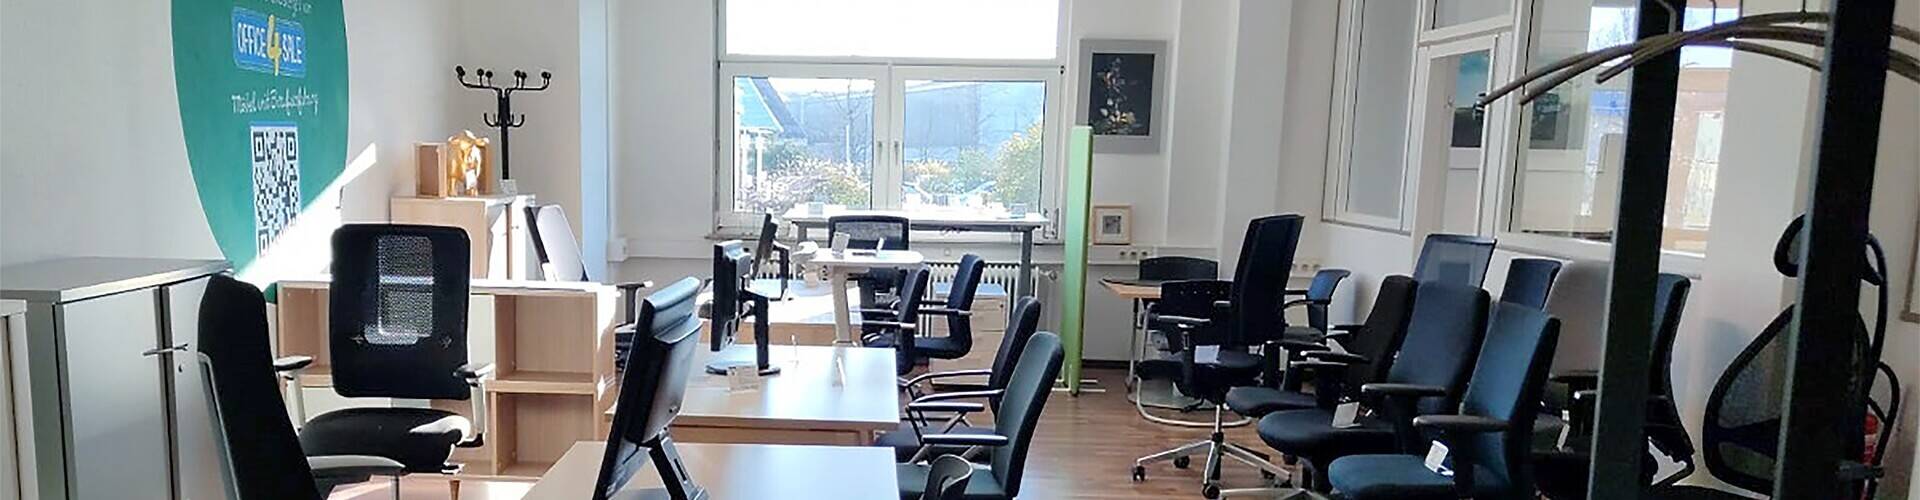 Büromöbel Düsseldorf: Standort von office-4-sale mit...